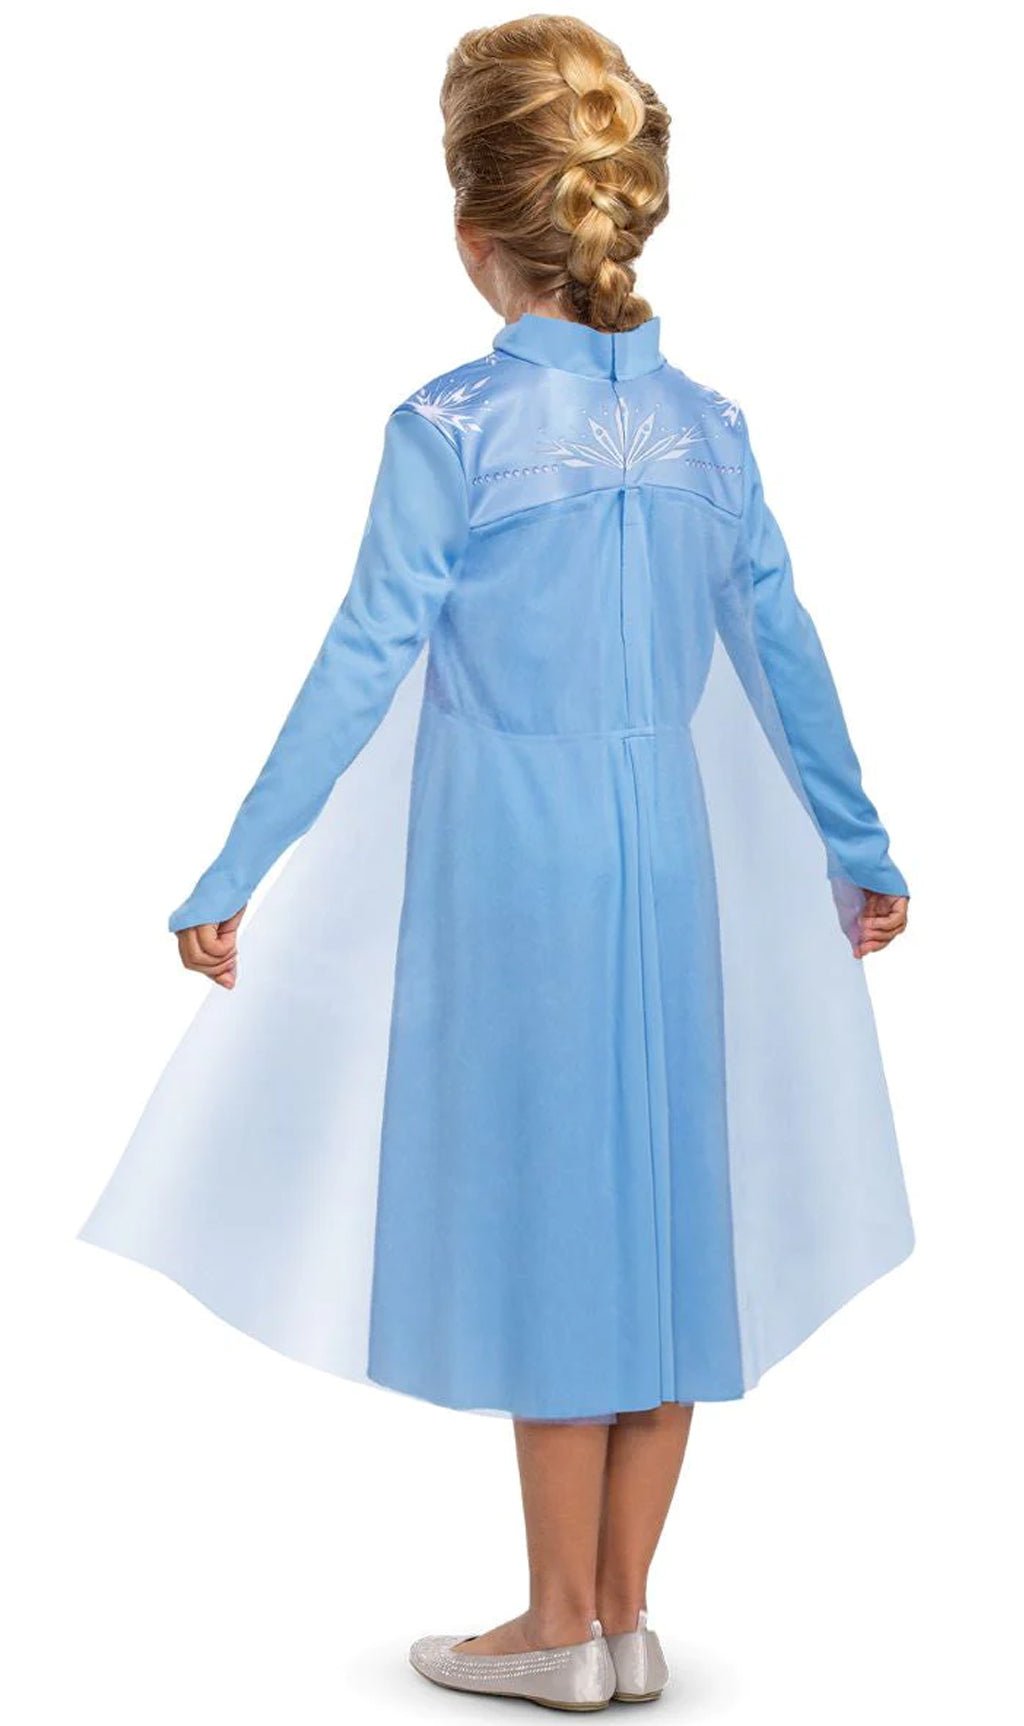 Costume Frozen 2 pezzi per Bambina Azzurro tg 5 anni WY1004